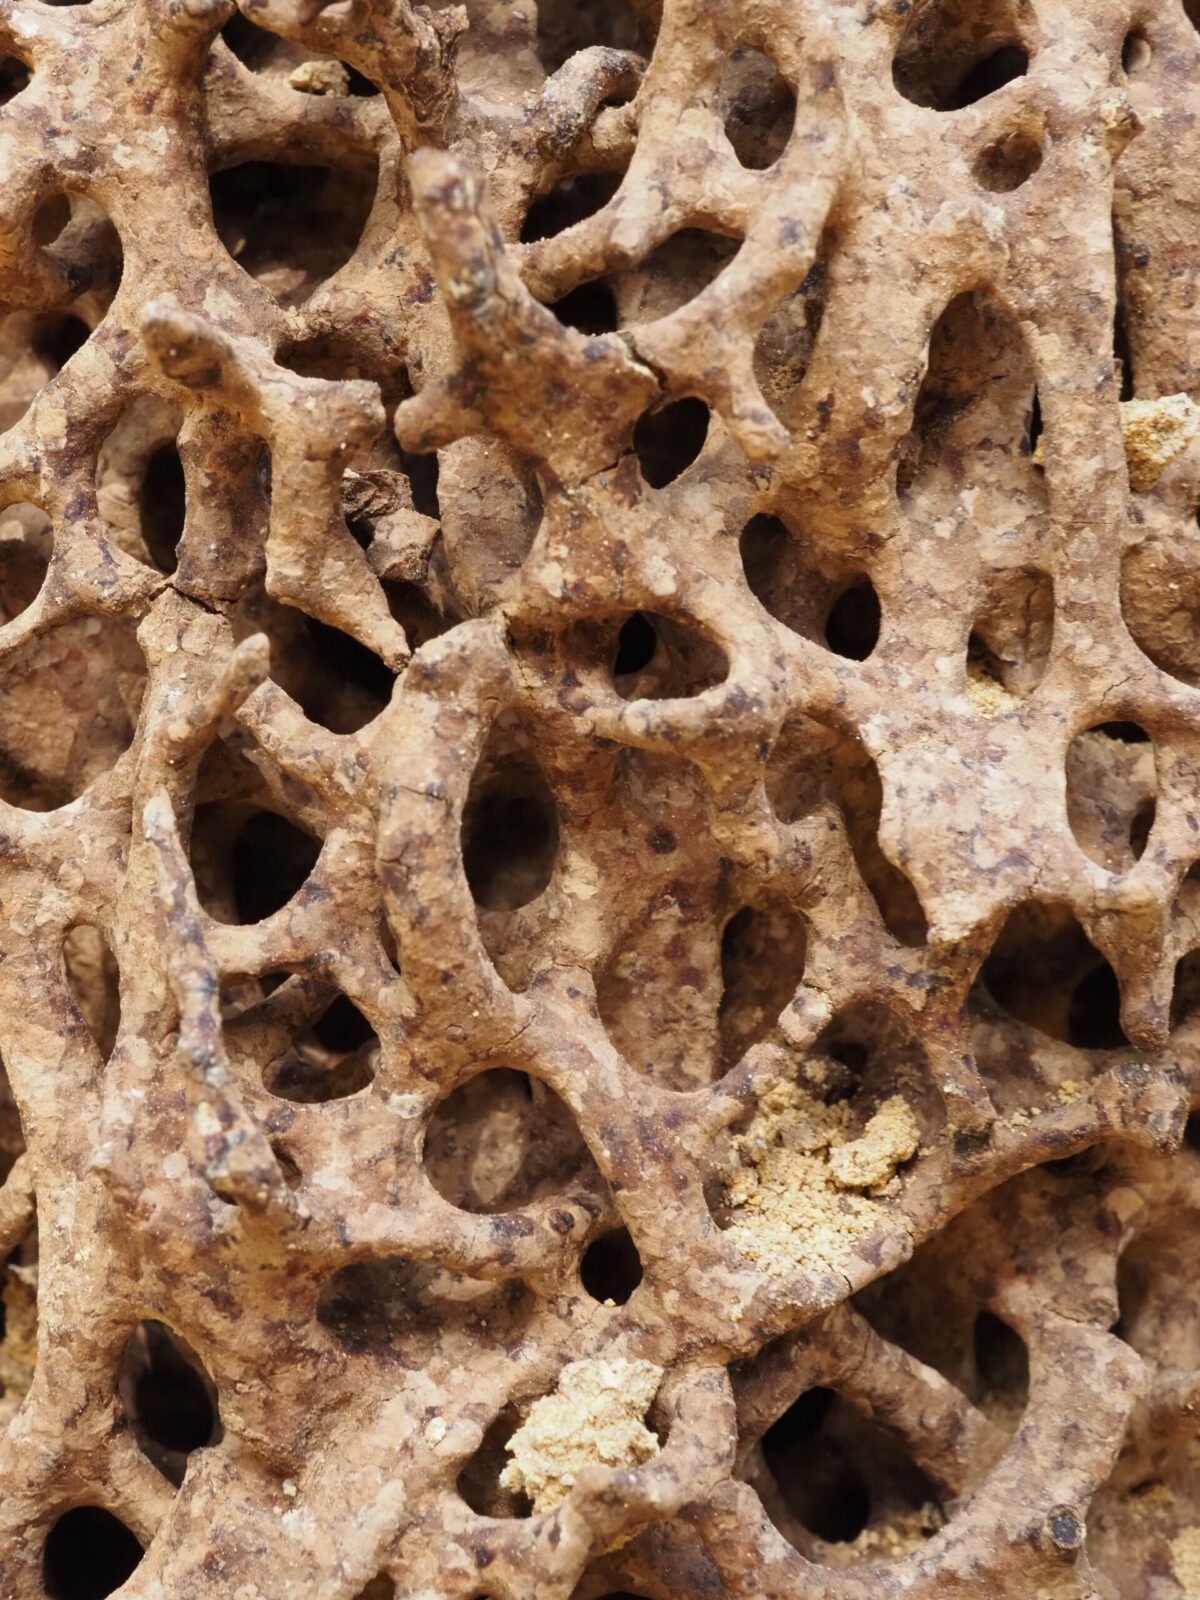 Nest of Coptotermes lacteus (termite nest) - internal structure